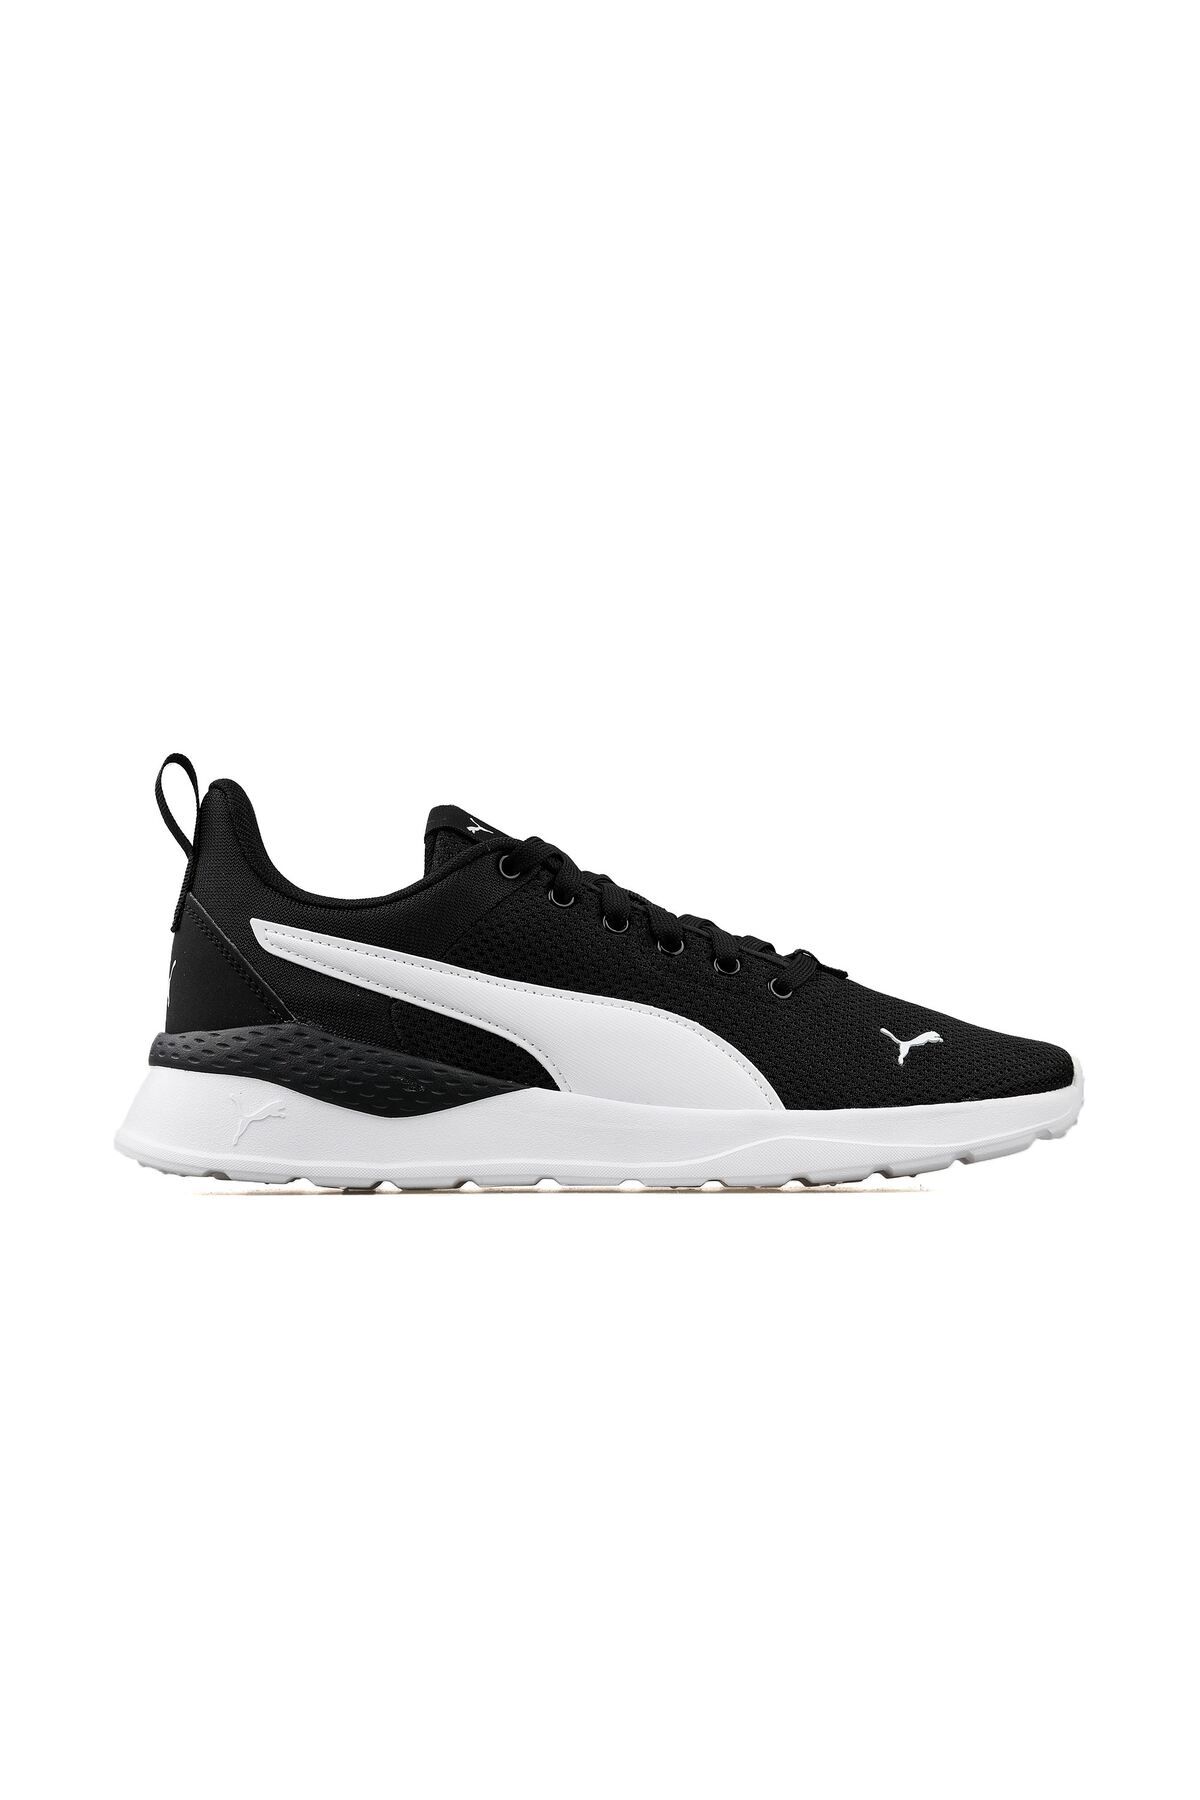 Puma Anzarun Lite Günlük Koşu Yürüyüş Ayakkabı Sneaker Siyah